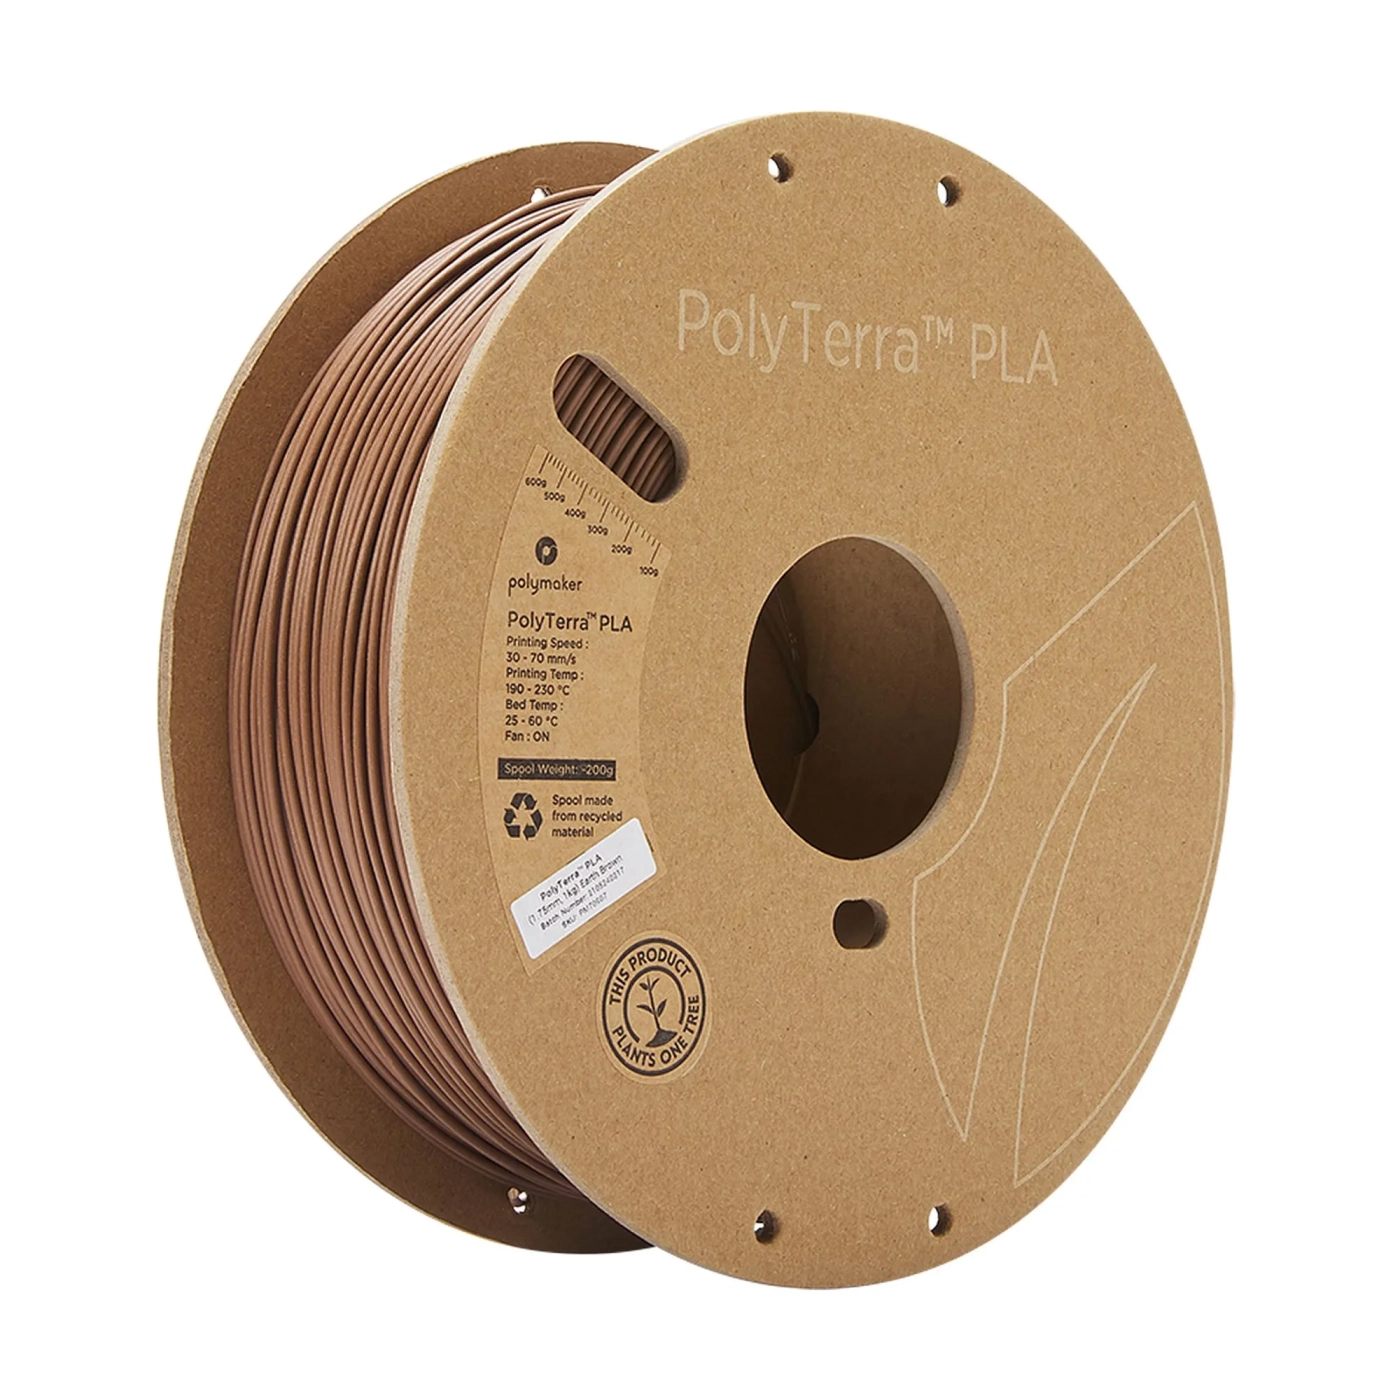 Купить PolyTerra PLA Filament (пластик) для 3D принтера Polymaker 1кг, 1.75мм, земляно-коричневый - фото 1